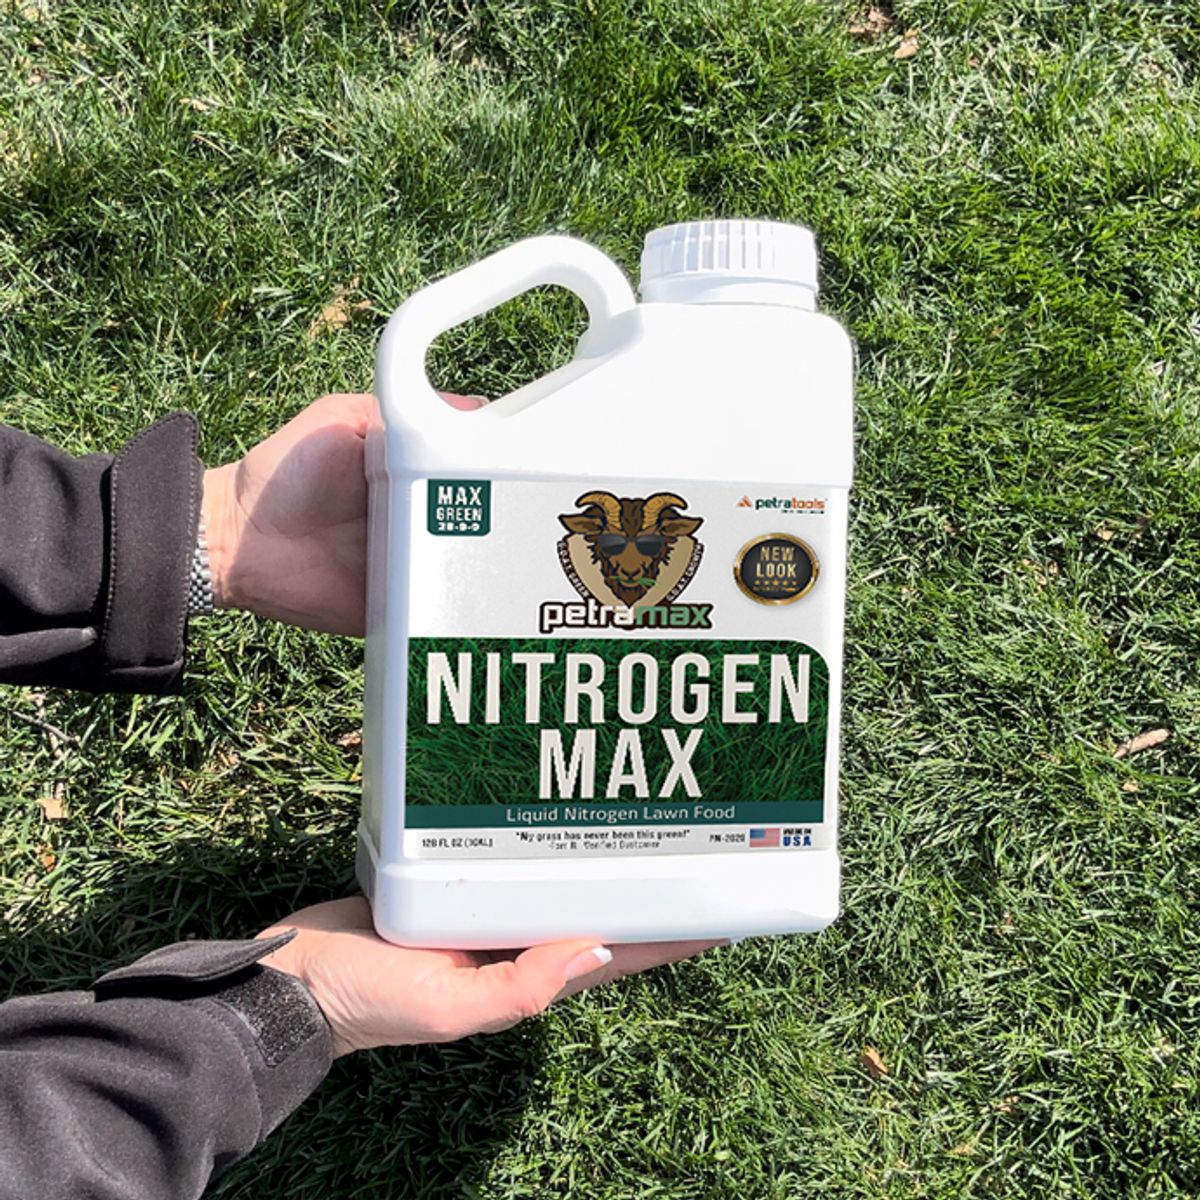 What's in Nitrogen Fertilizer?